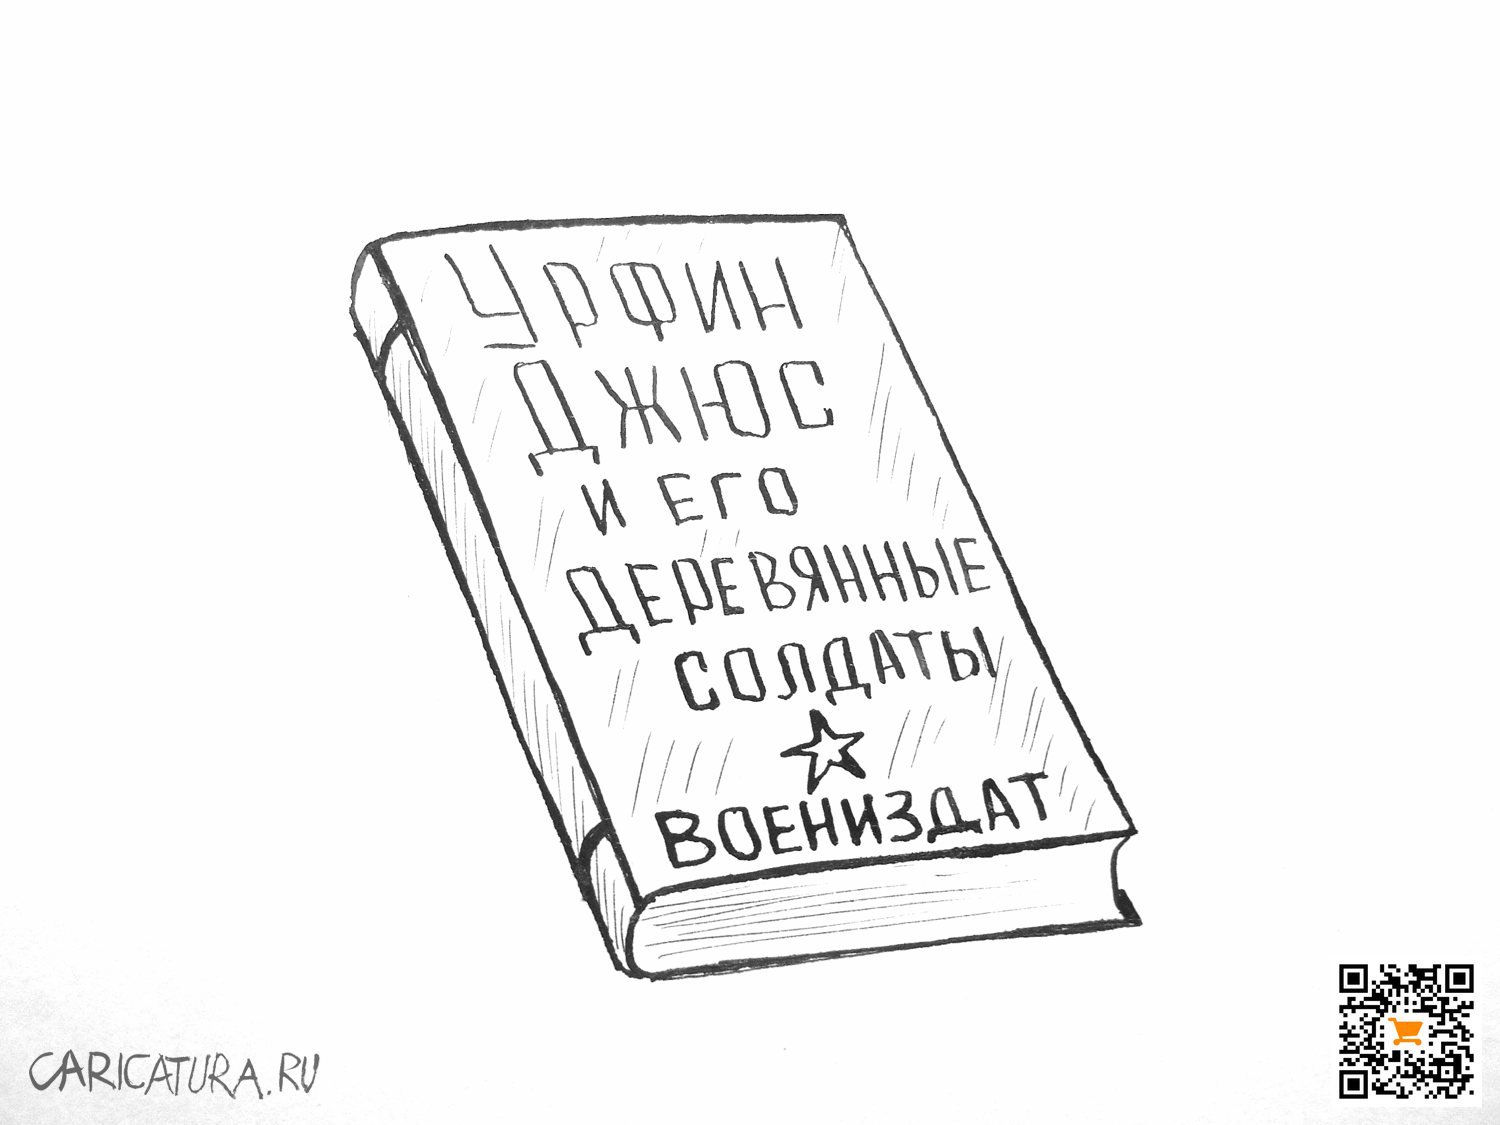 Карикатура "Воениздат", Александр Петров